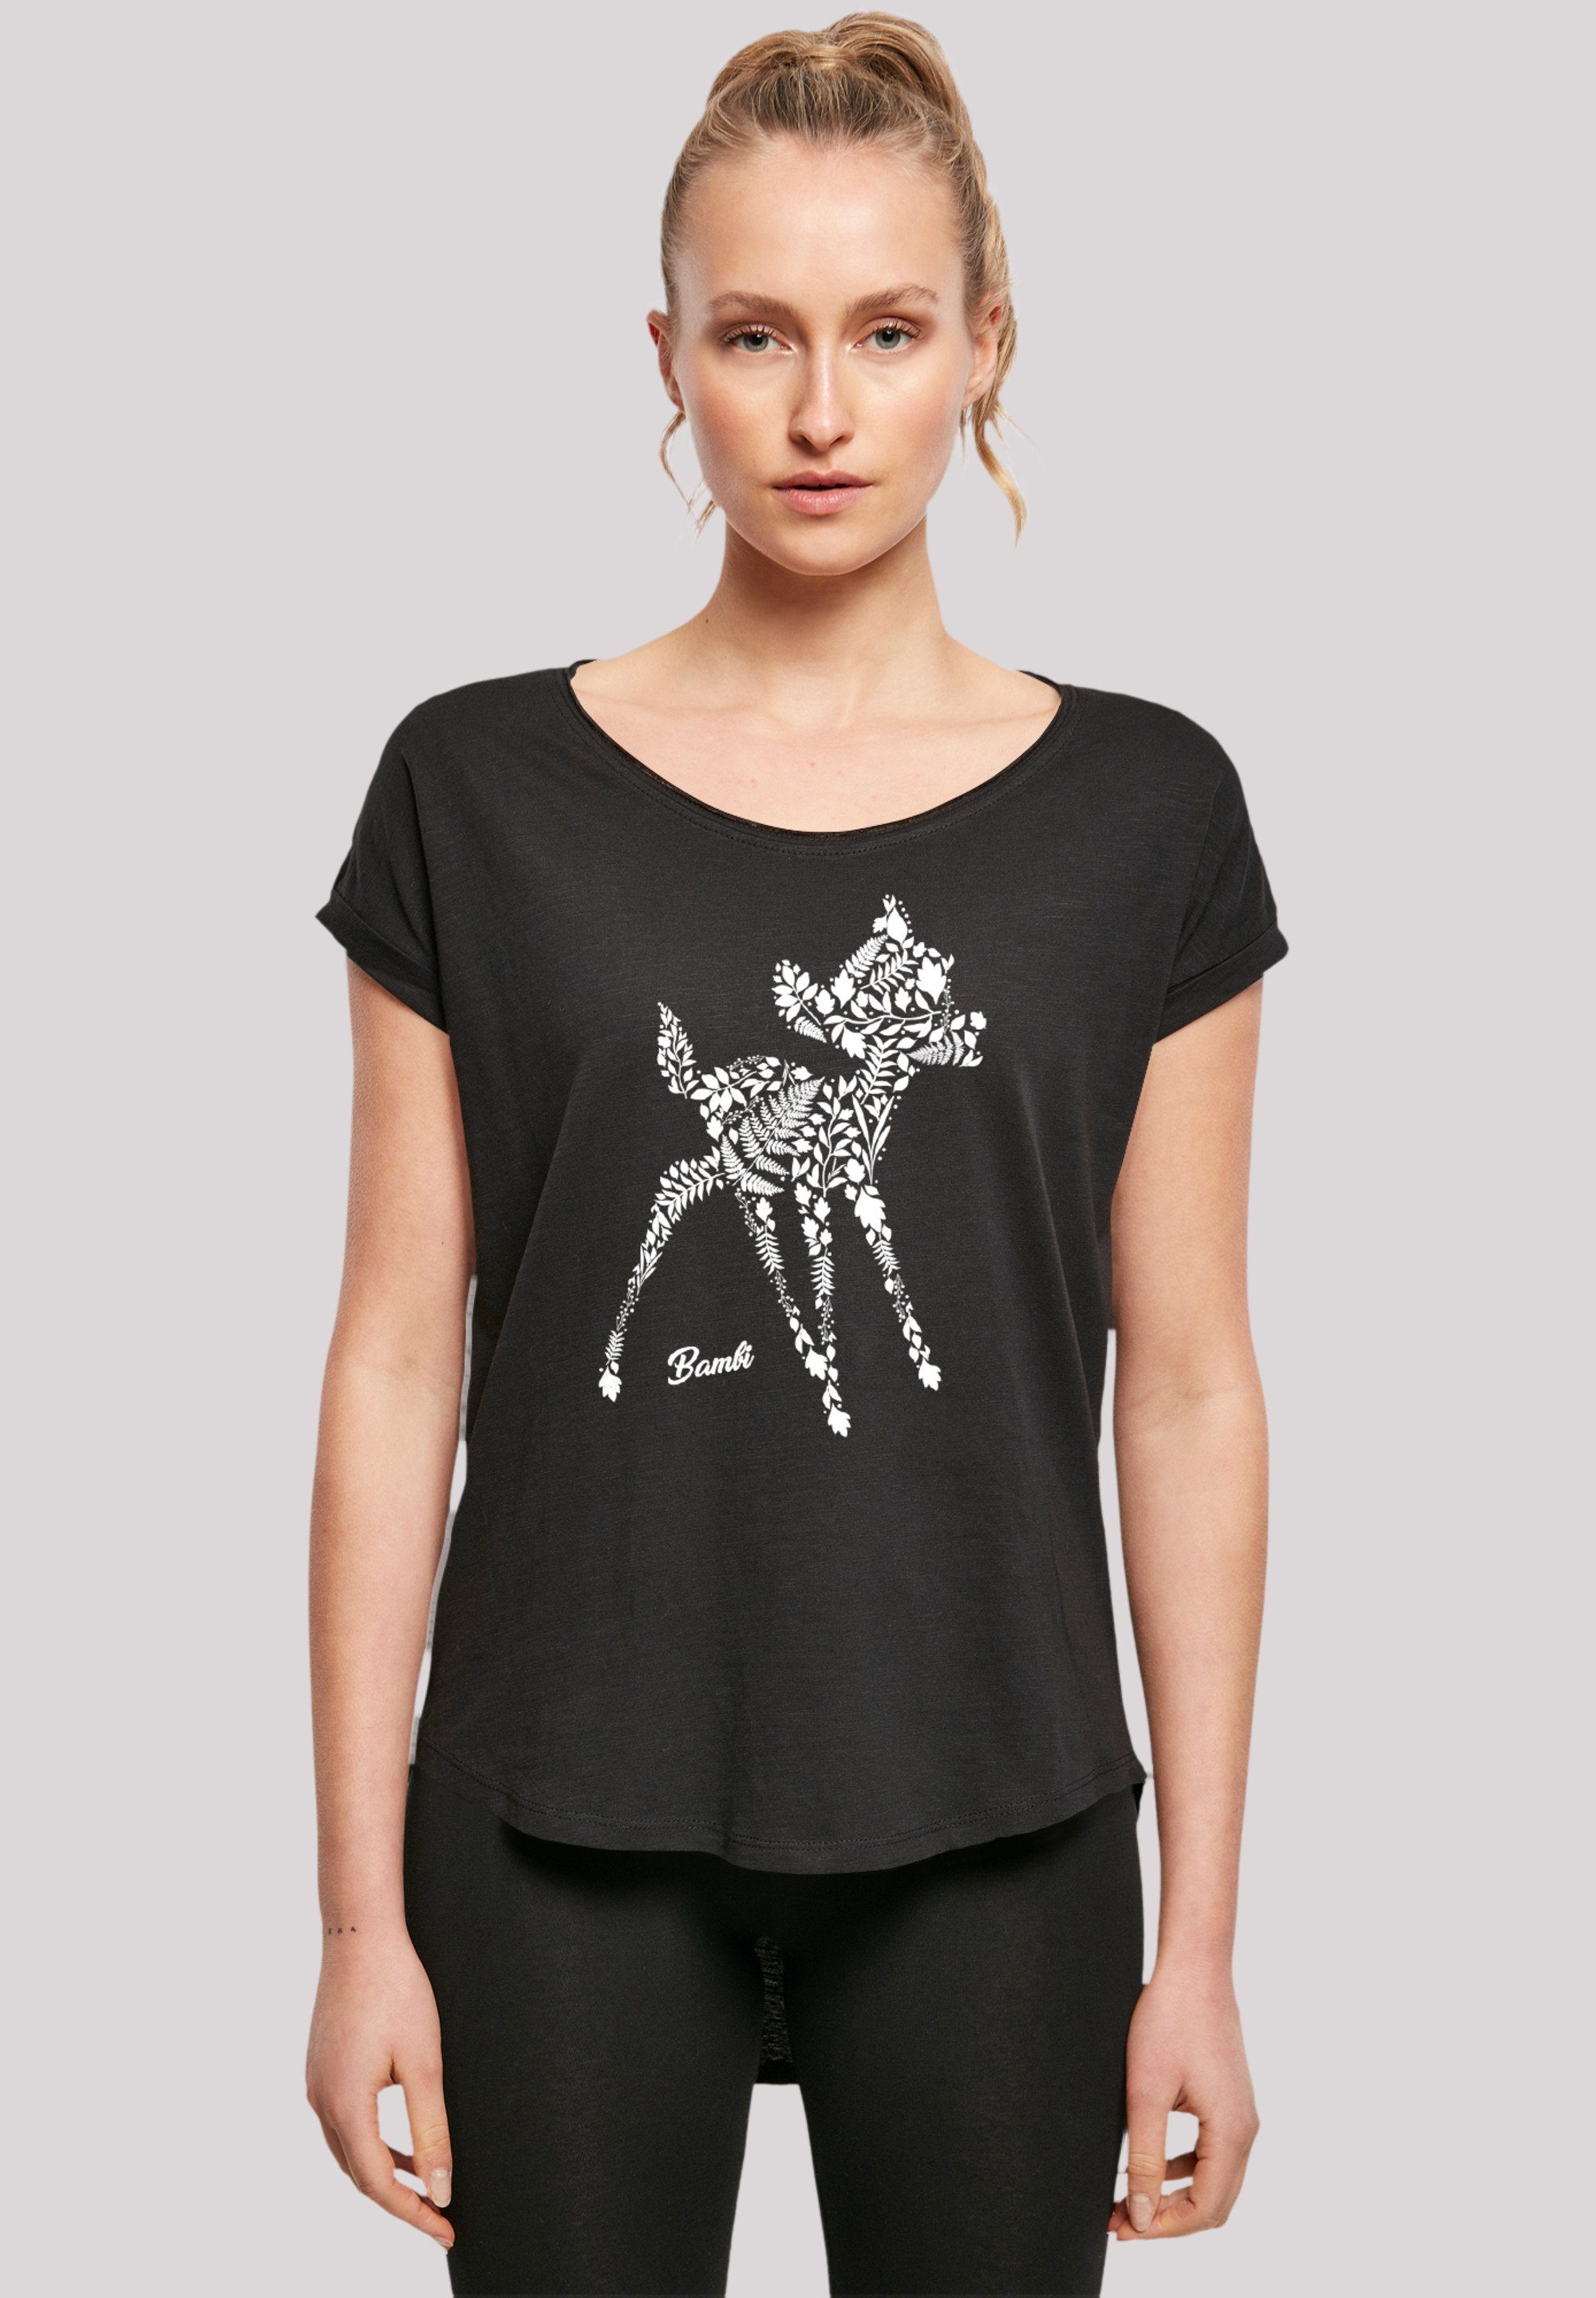 F4NT4STIC T-Shirt Disney Bambi Botanica Sehr Baumwollstoff hohem mit weicher Premium Qualität, Tragekomfort